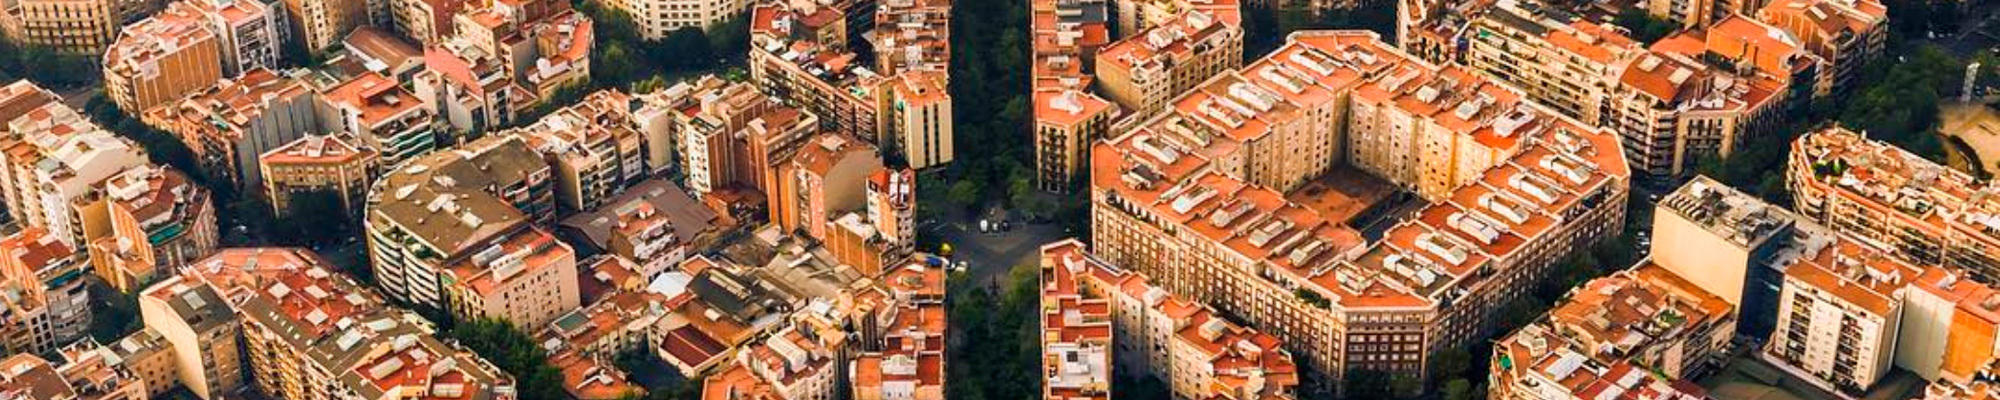 Properties inNew Developments in Barcelona